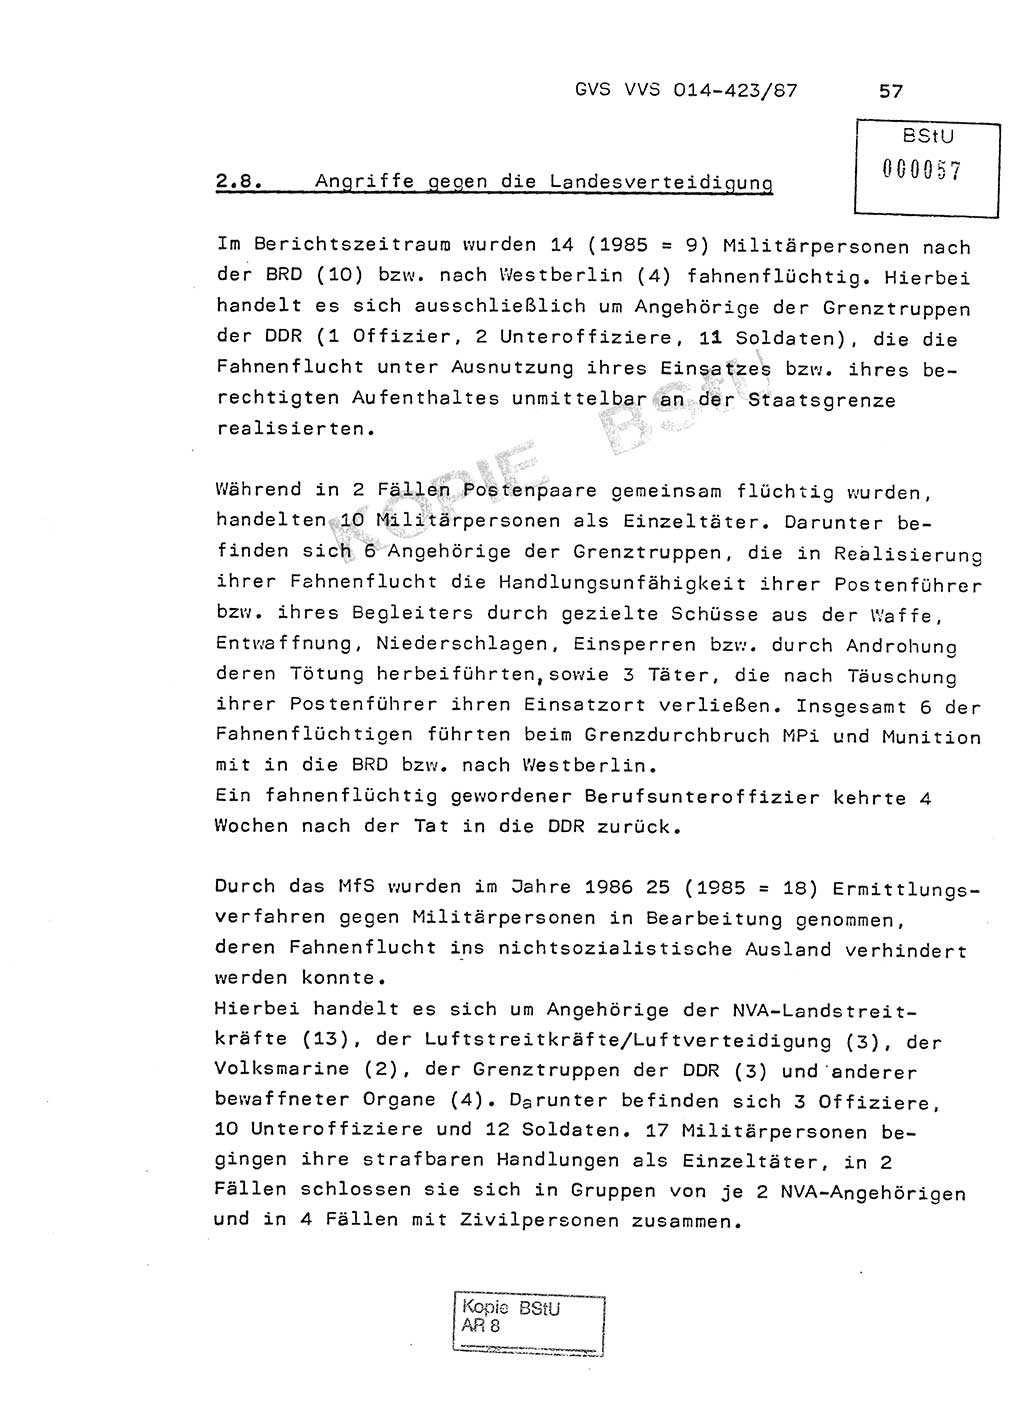 Jahresbericht der Hauptabteilung (HA) Ⅸ 1986, Einschätzung der Wirksamkeit der Untersuchungsarbeit im Jahre 1986, Ministerium für Staatssicherheit (MfS) der Deutschen Demokratischen Republik (DDR), Hauptabteilung Ⅸ, Geheime Verschlußsache (GVS) o014-423/87, Berlin 1987, Seite 57 (Einsch. MfS DDR HA Ⅸ GVS o014-423/87 1986, S. 57)